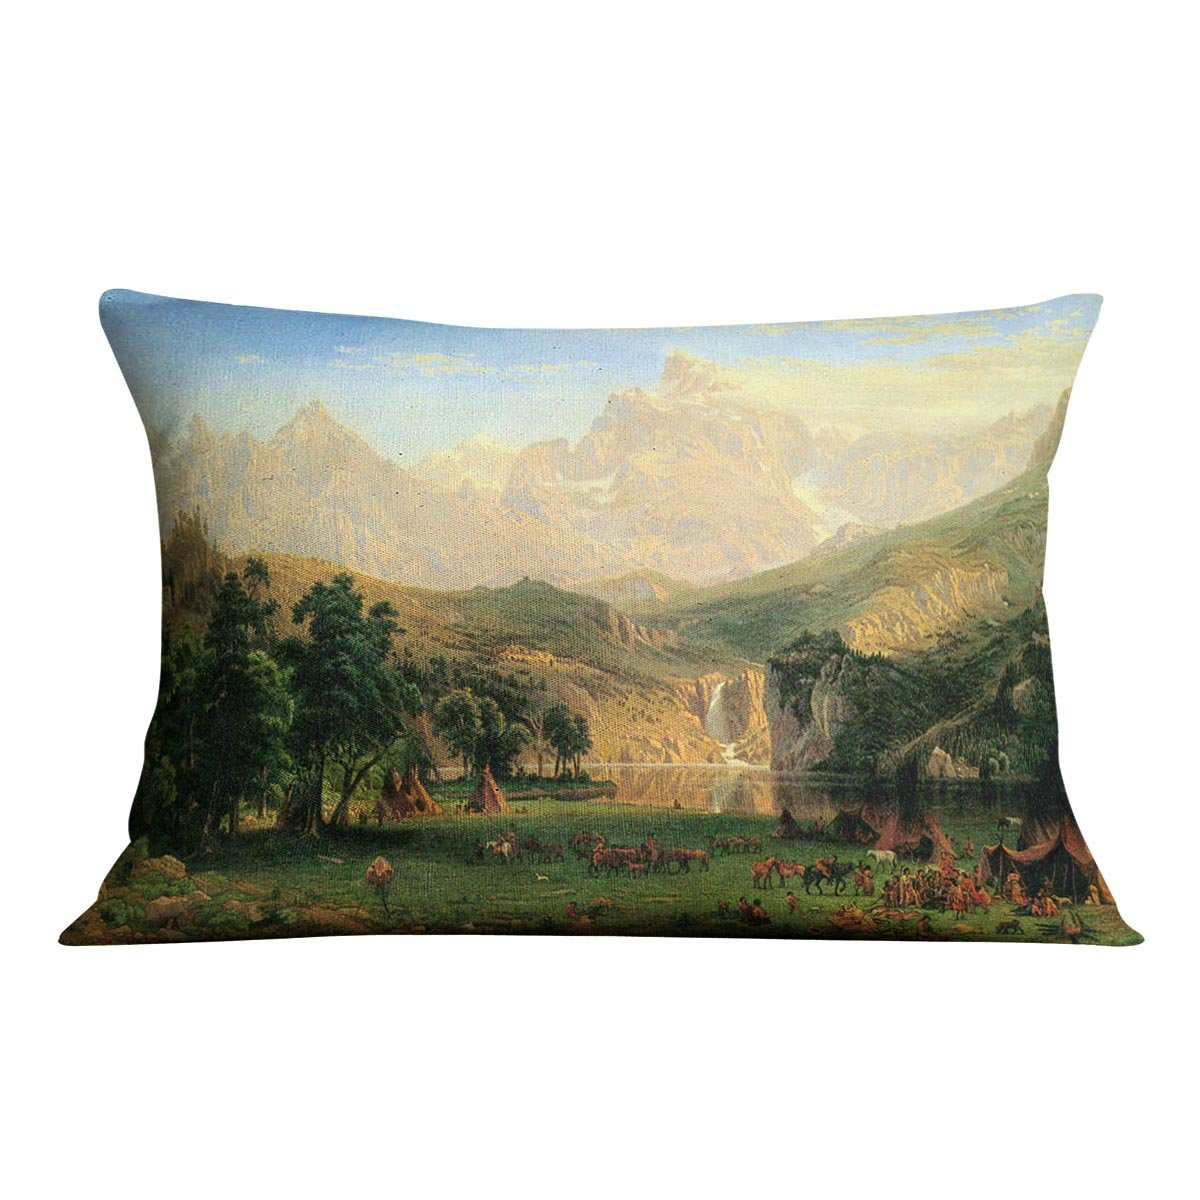 Rocky Montains at Lander's Peak by Bierstadt Cushion - Canvas Art Rocks - 4